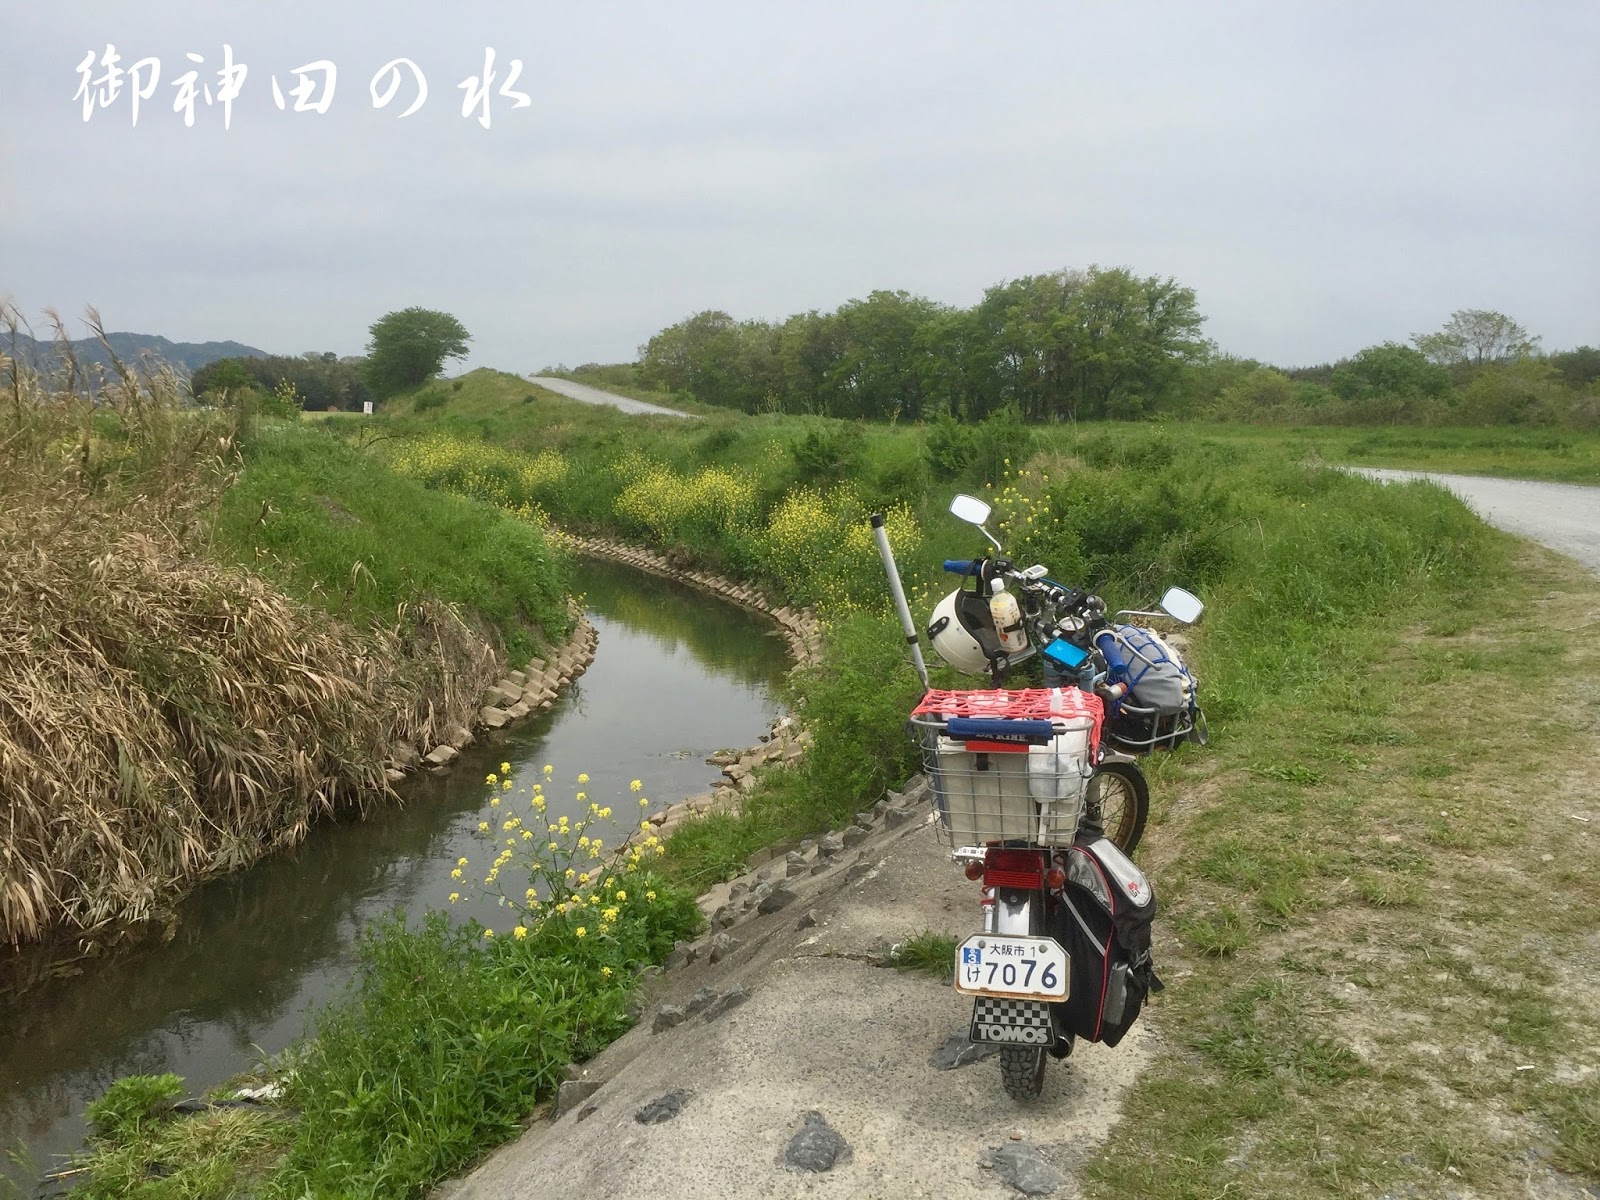 住吉めだか 御神田の水 オフィシャルブログ 京都亀岡へタナゴ釣り